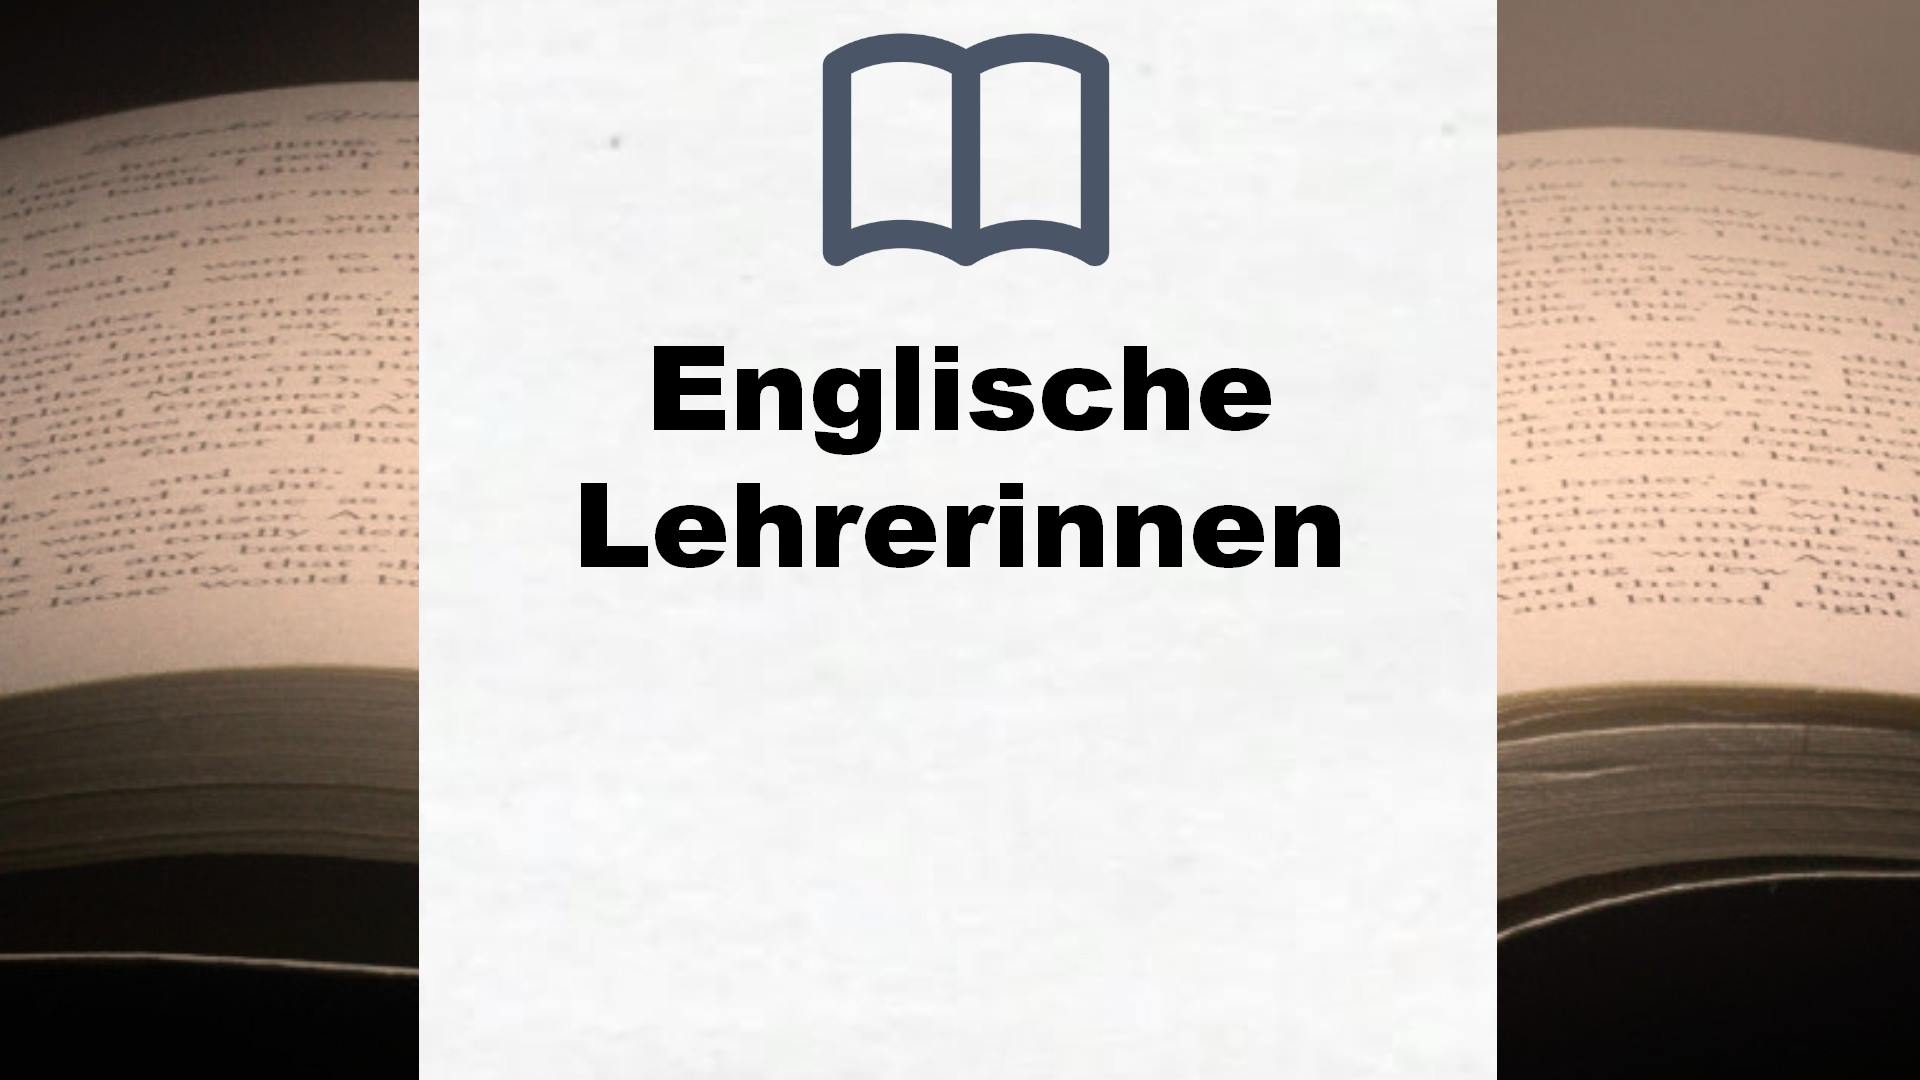 Bücher über Englische Lehrerinnen